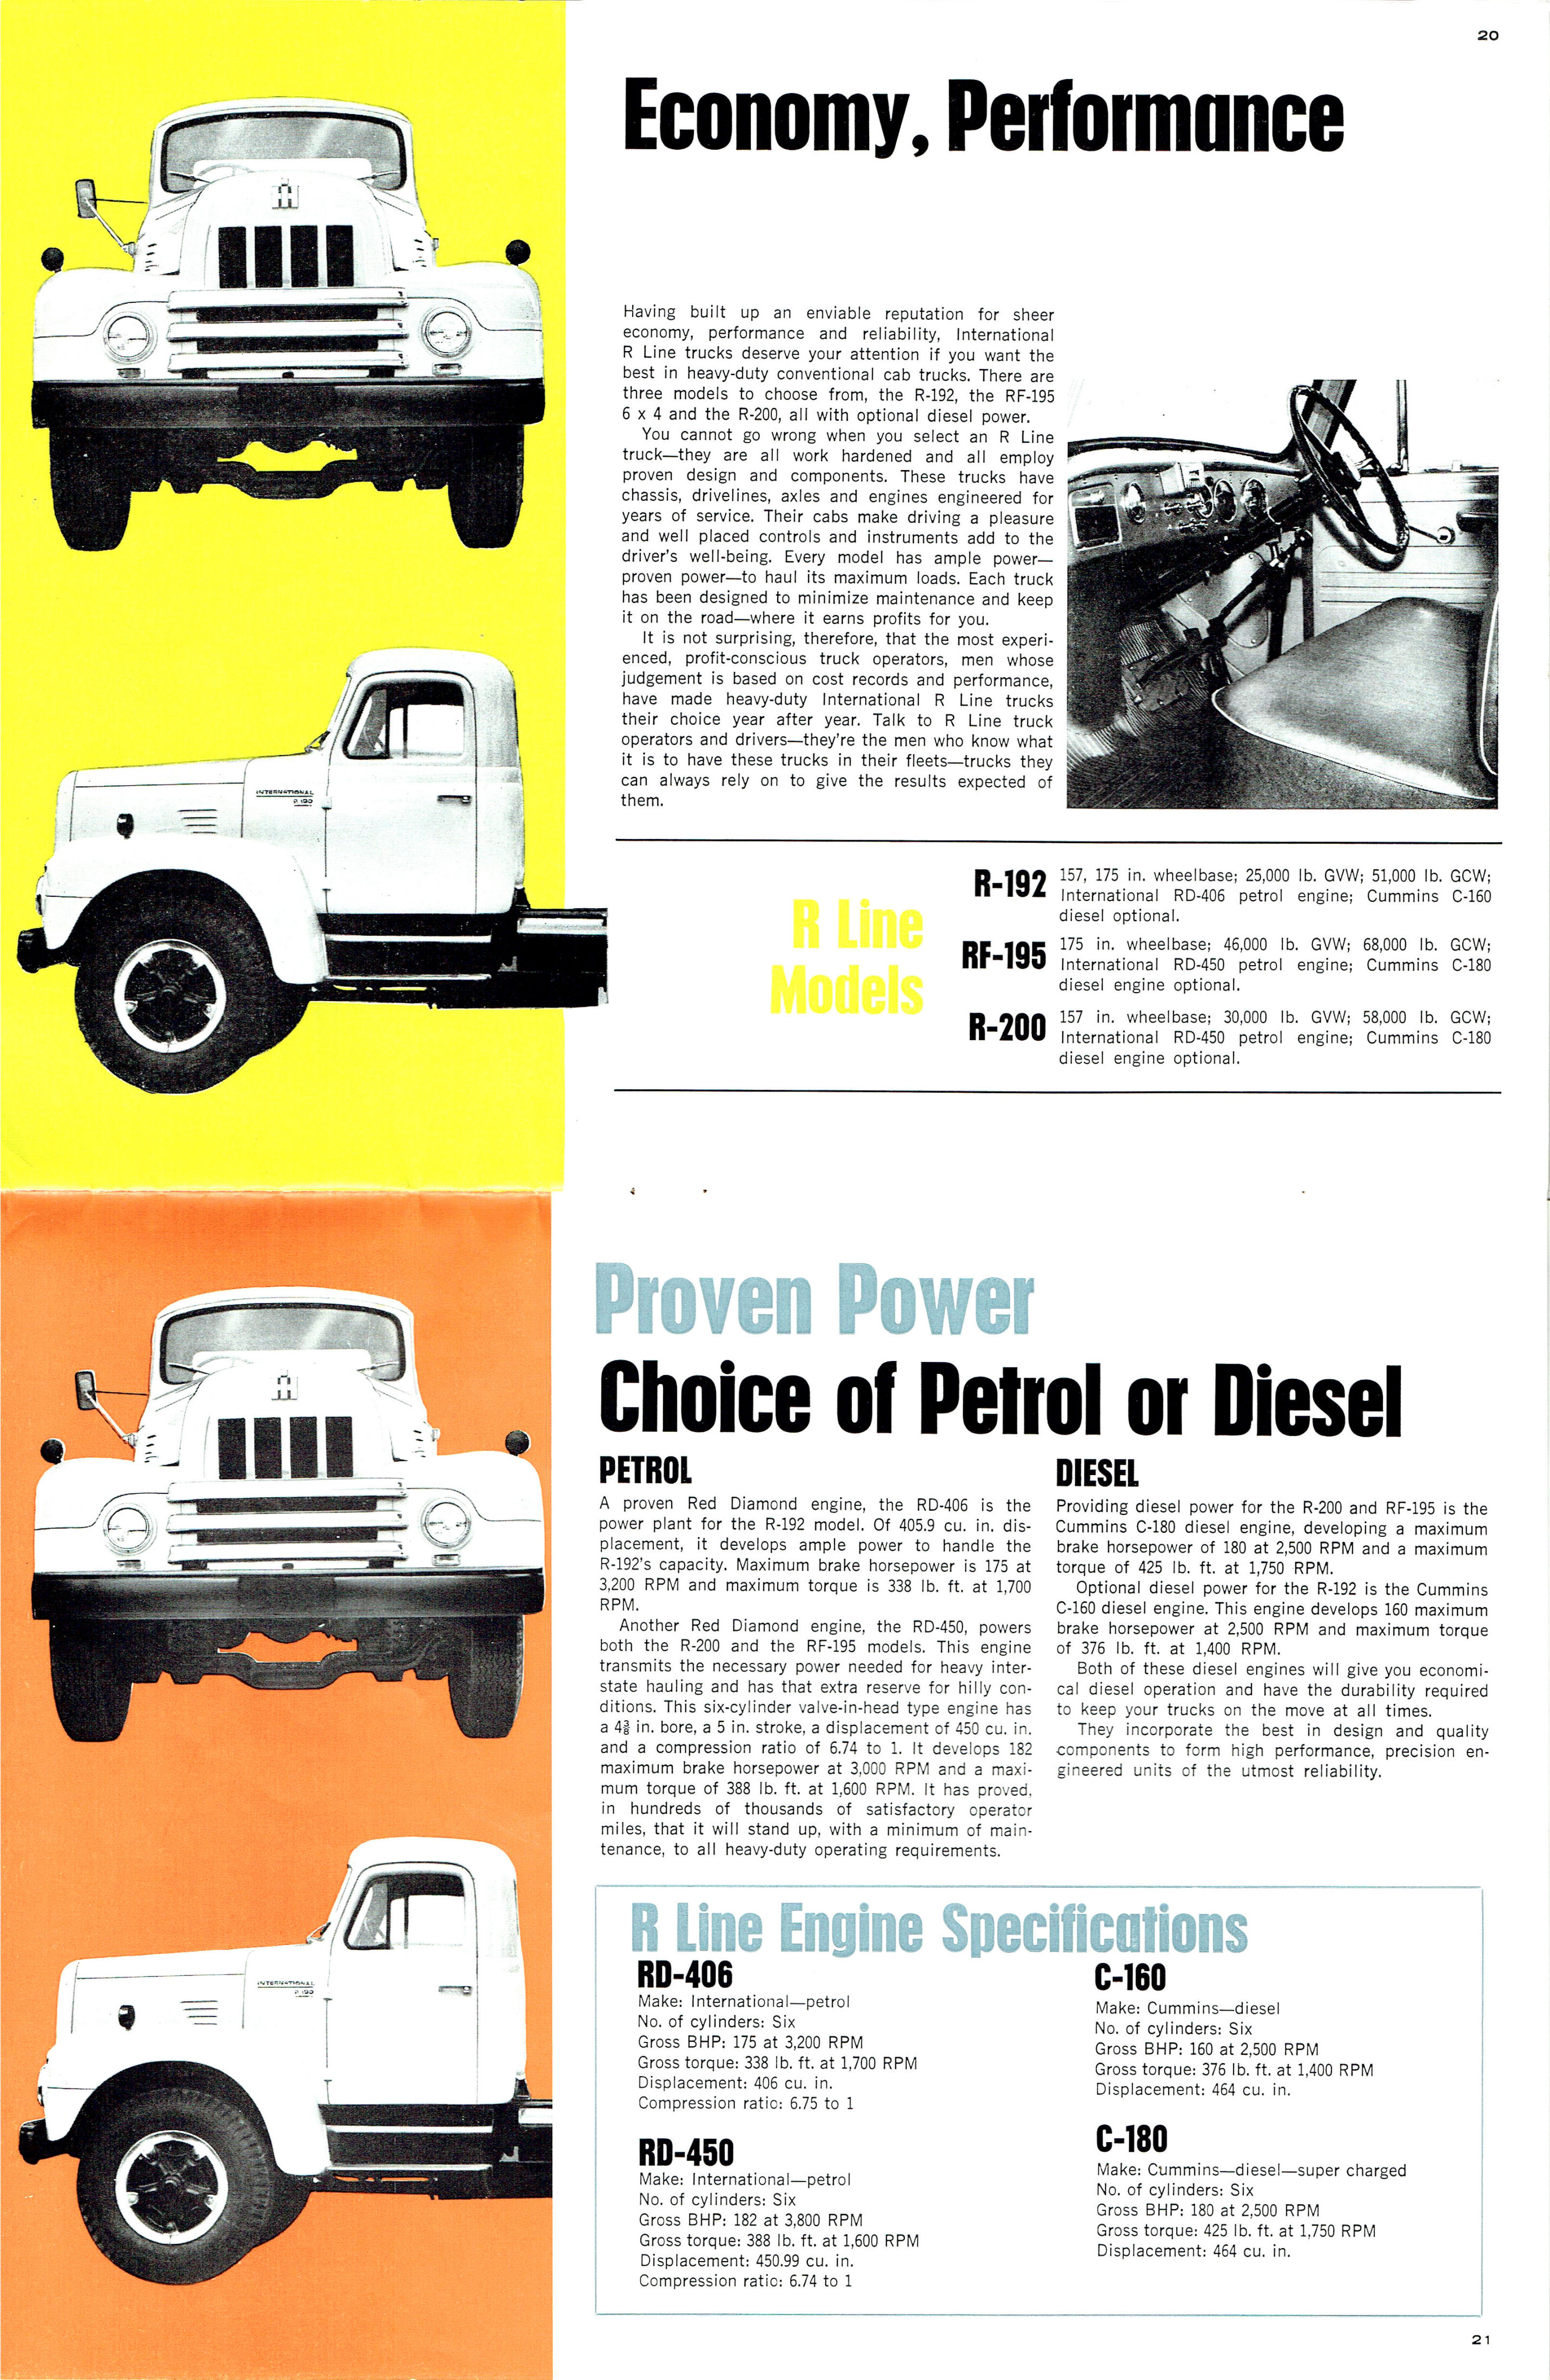 1969_Intrernational_Motor_Trucks-20-21